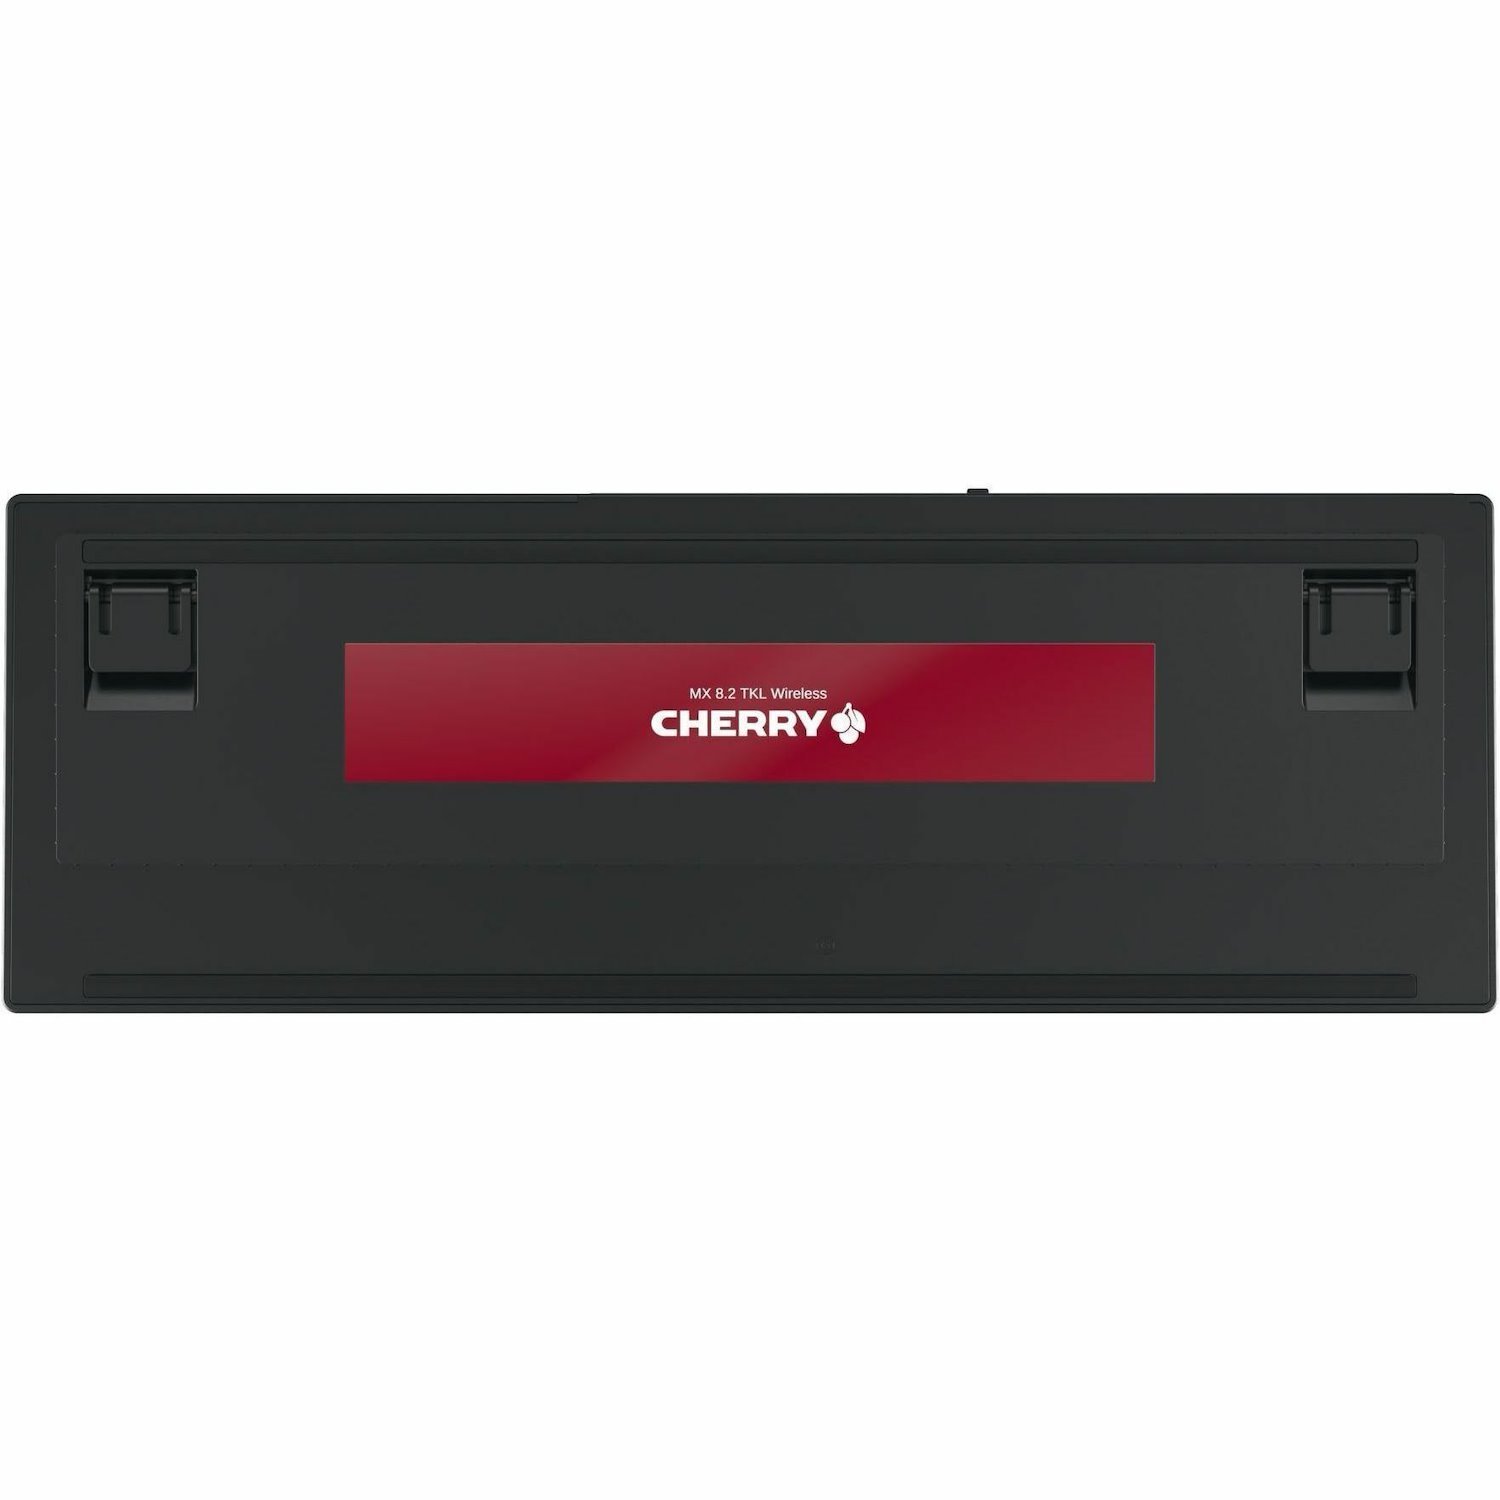 CHERRY MX 8.2 TKL, WIRELESS, MX RED RGB SWITCH, Black